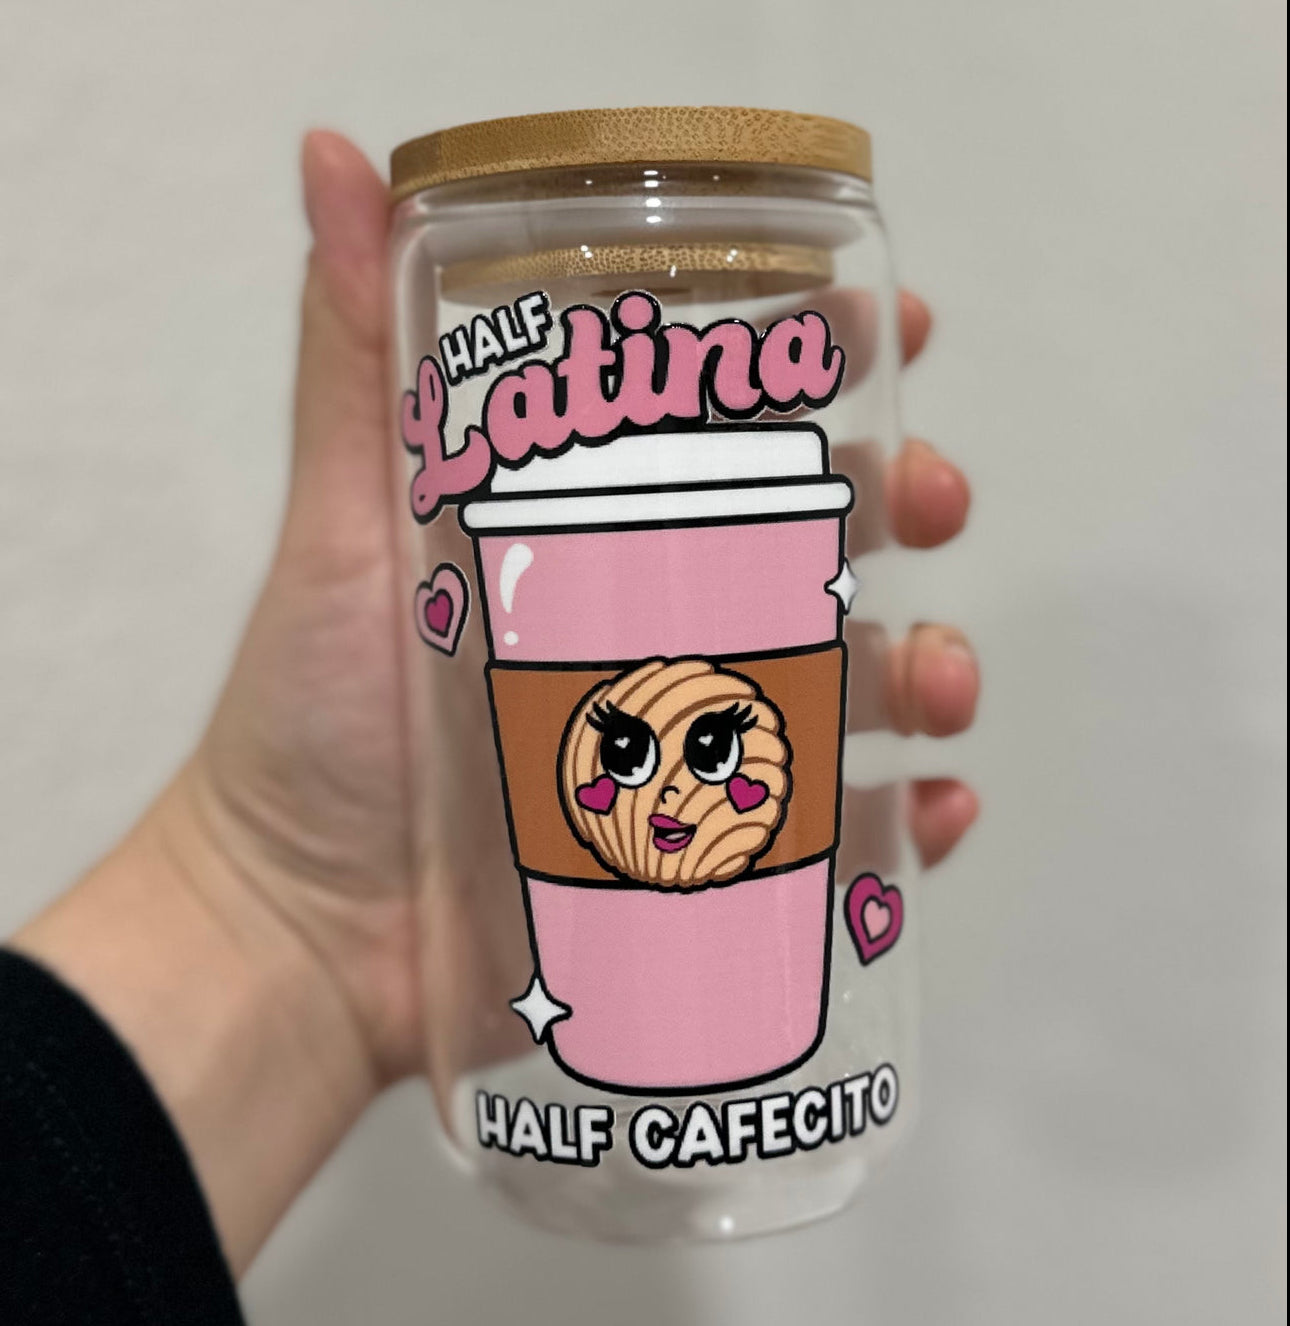 Half Latina Half Cafecito Cup